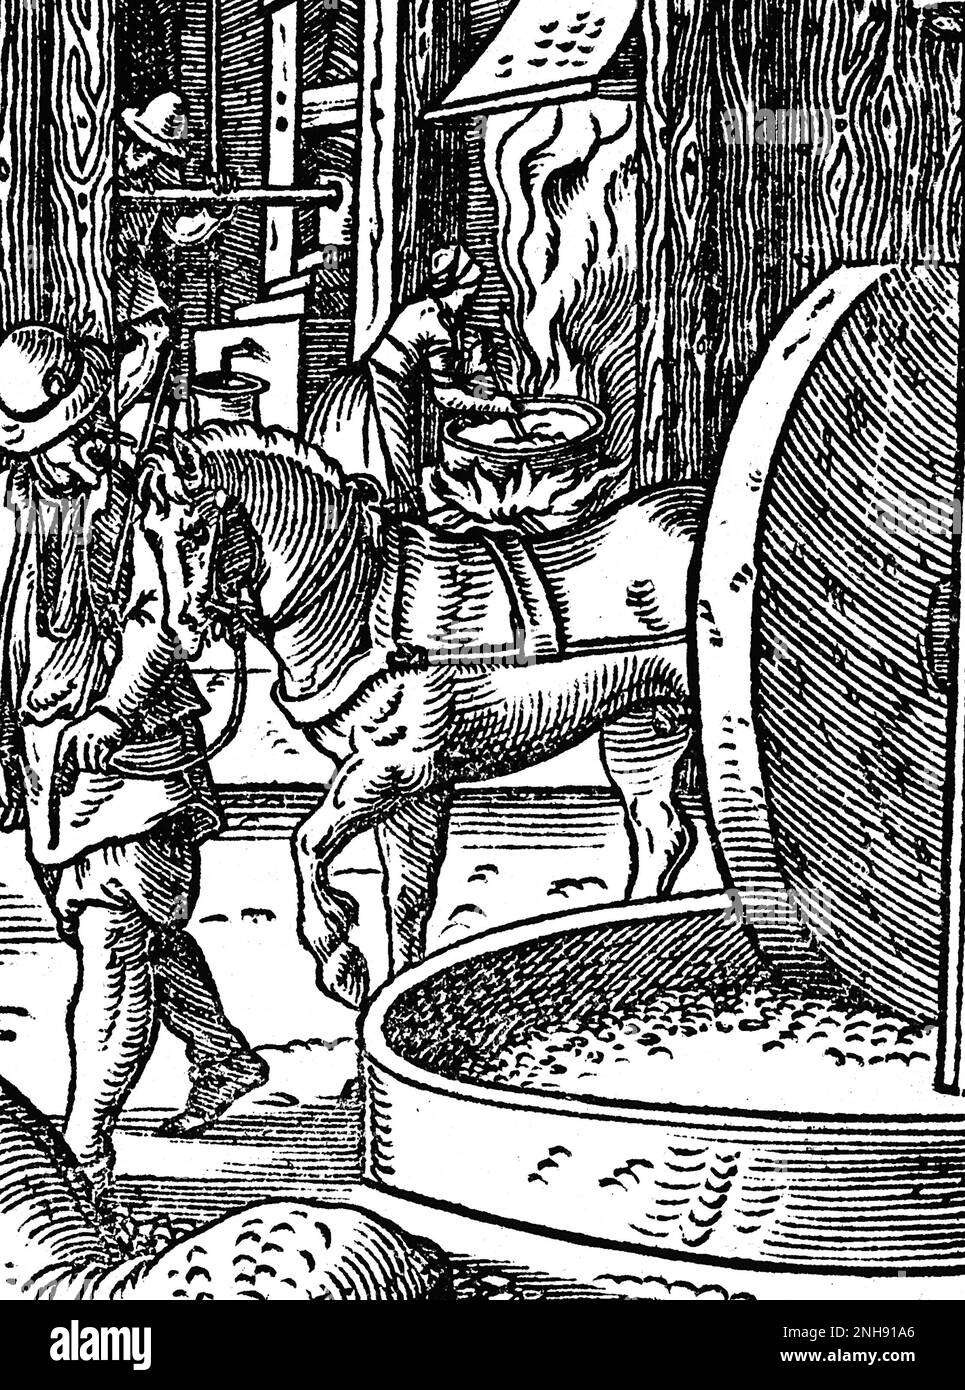 Eine Werkstatt, in der Öle aus Bäumen, Nüssen, Beeren usw. für Lebensmittel und Medizin hergestellt werden. Woodcut aus Jost Ammans Handelsbuch, 1568. Stockfoto